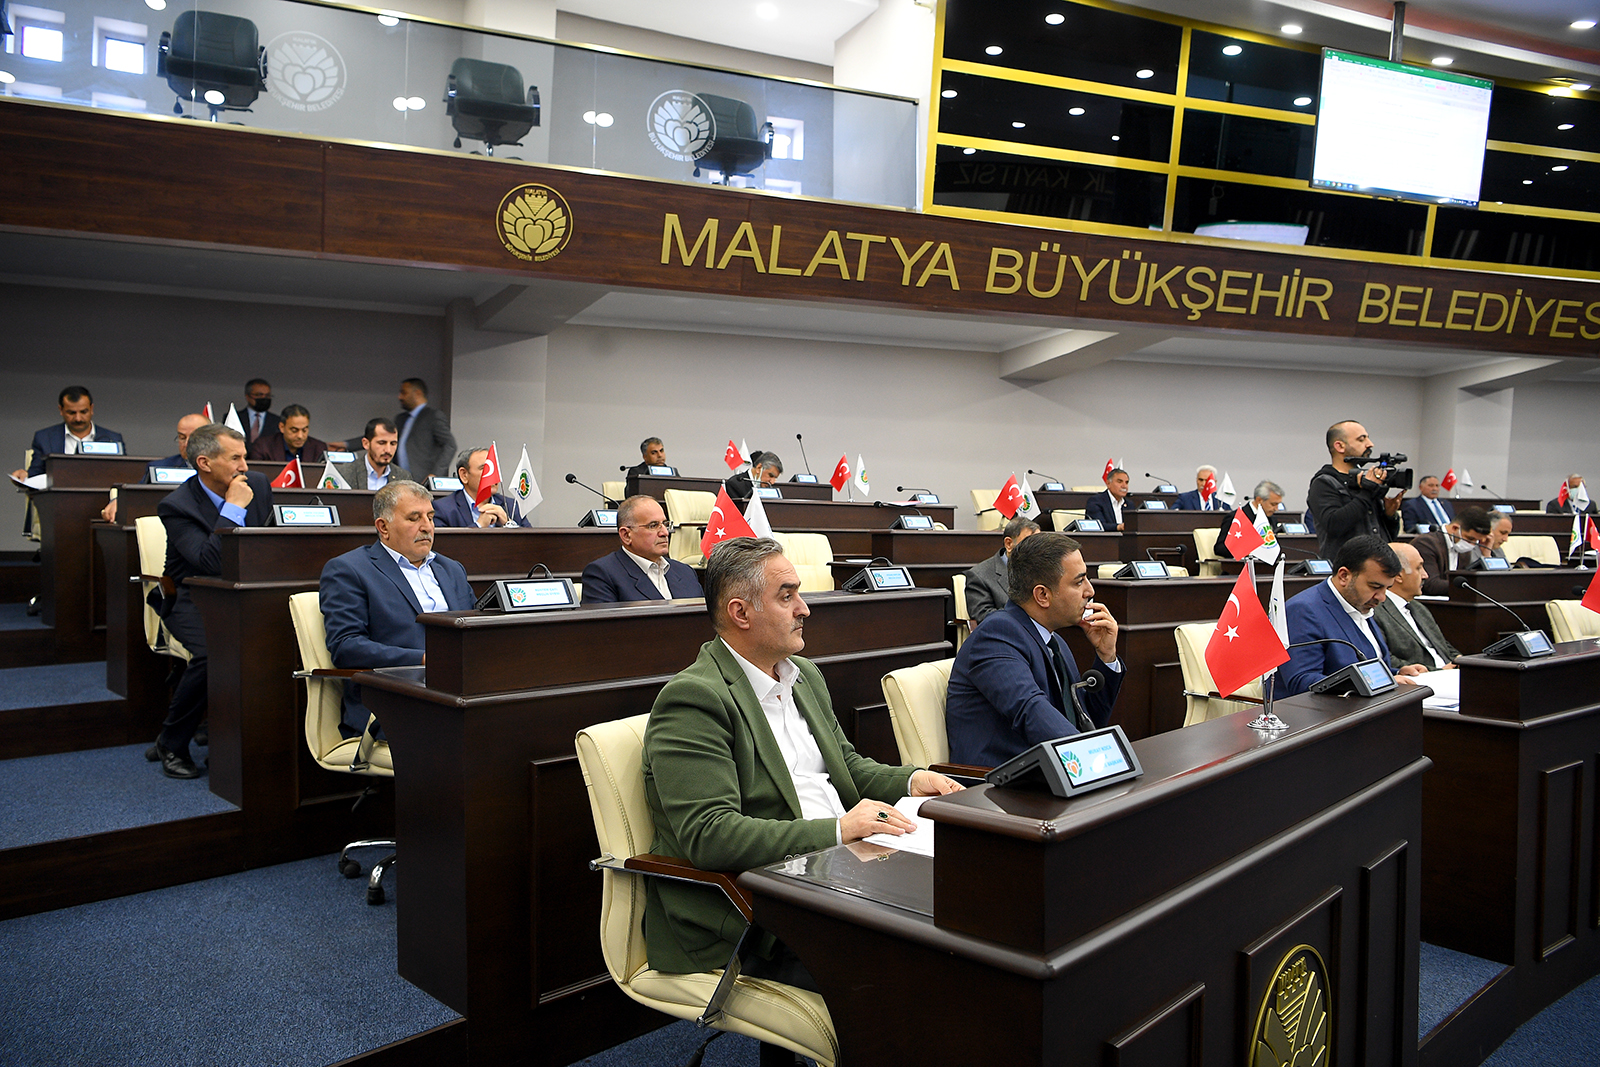 Malatya Büyükşehir Belediye Meclisi, Nisan ayı ilk toplantısını Büyükşehir Belediye Başkanı Selahattin Gürkan Başkanlığında, 13 Nisan 2021 Çarşamba günü saat 14.00’de Belediye Meclis Salonunda gerçekleştirdi. Mecliste komisyon üyeleri seçildi.